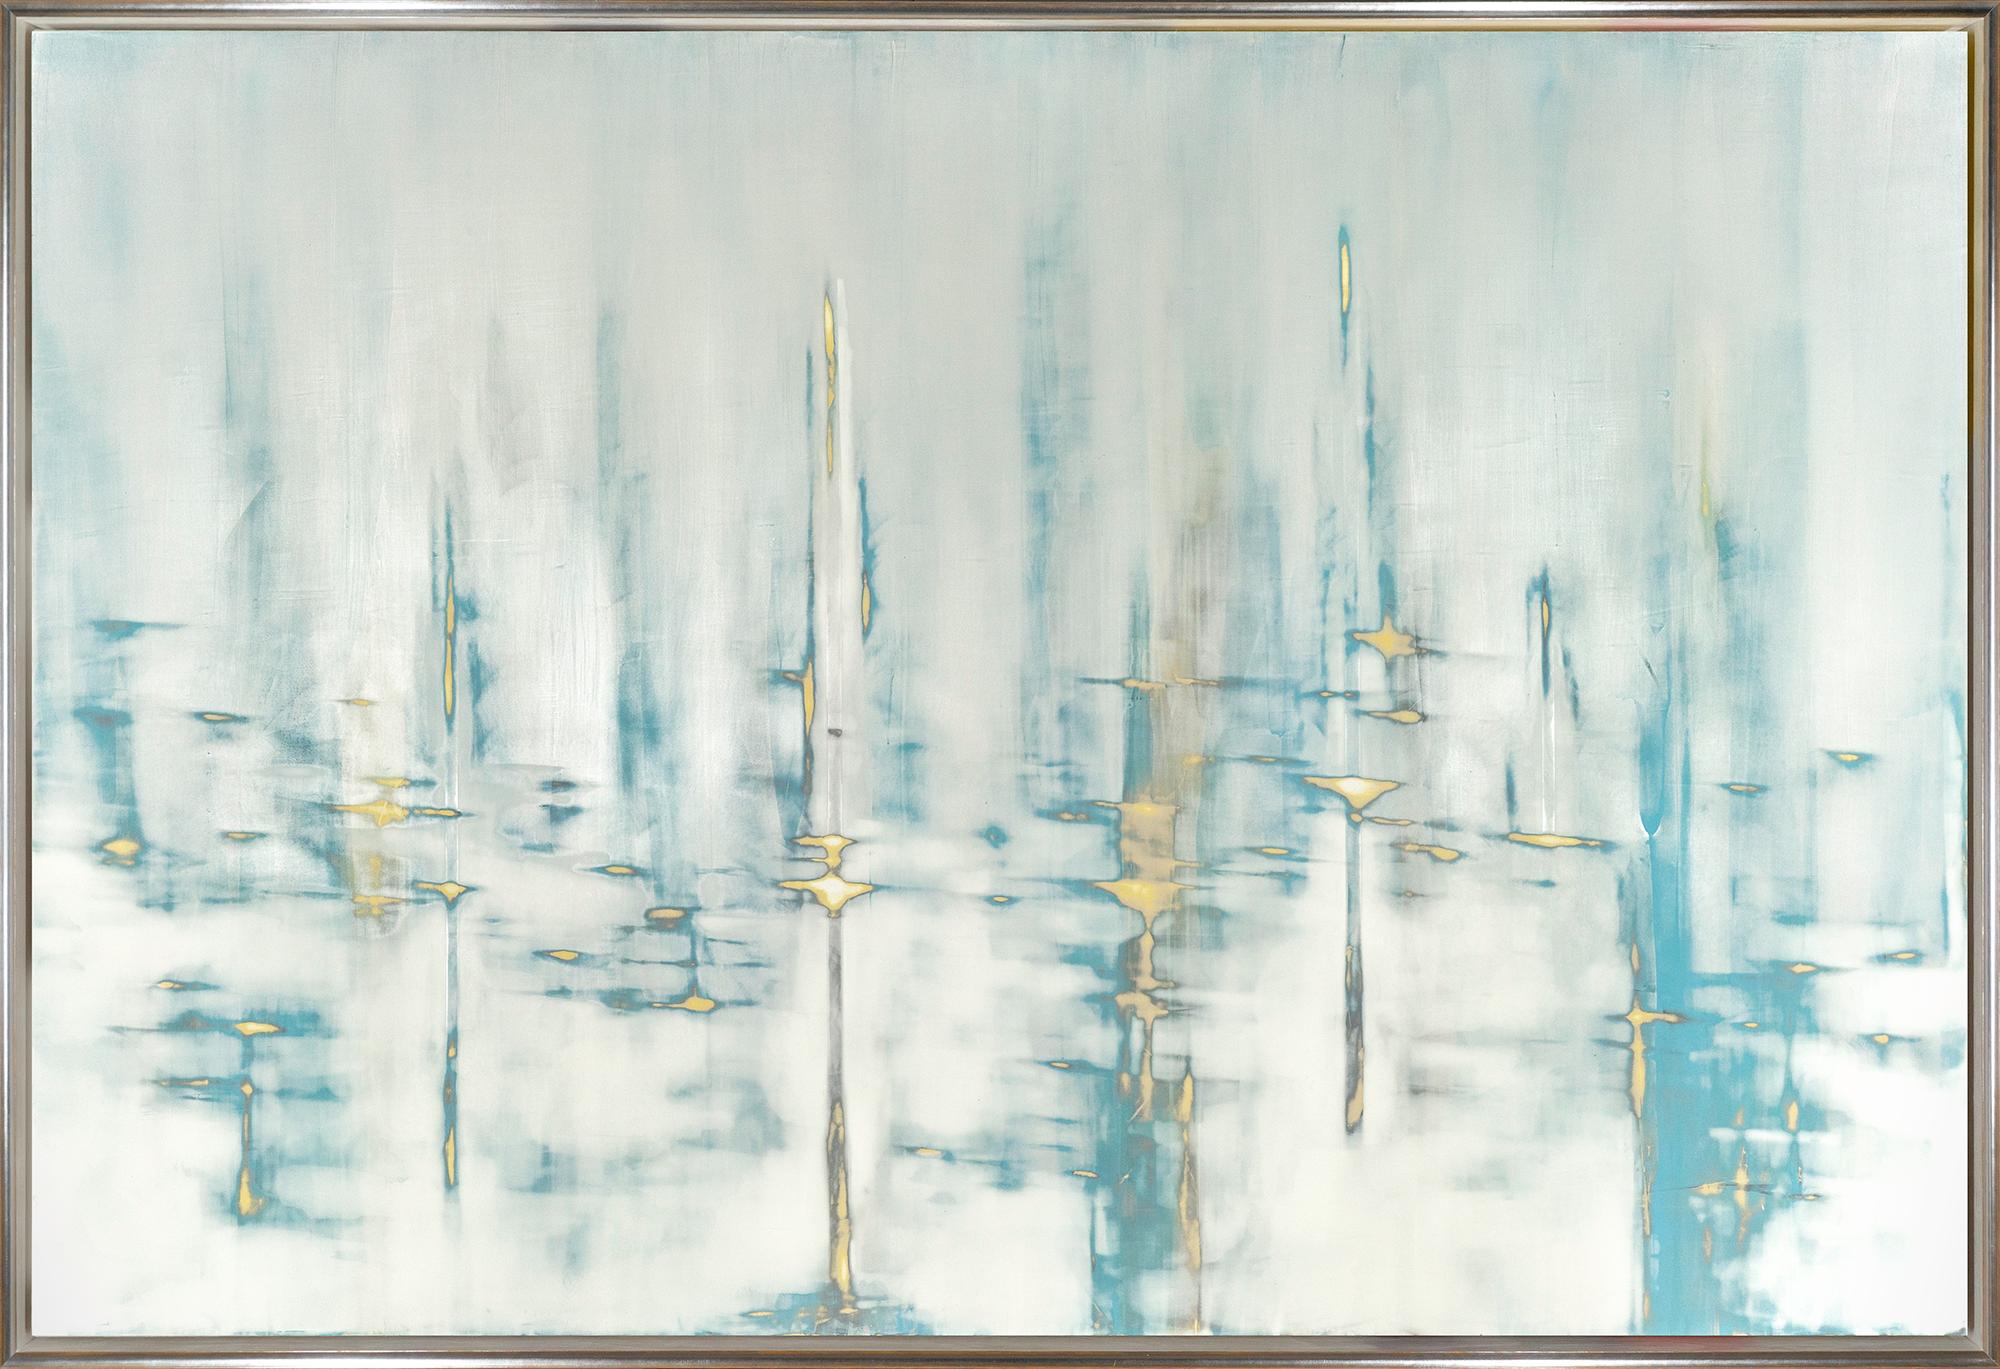 Audra Weaser Abstract Painting – "Cool Waters" Zeitgenössisches abstraktes gerahmtes Gemälde mit gemischten Medien auf Tafel